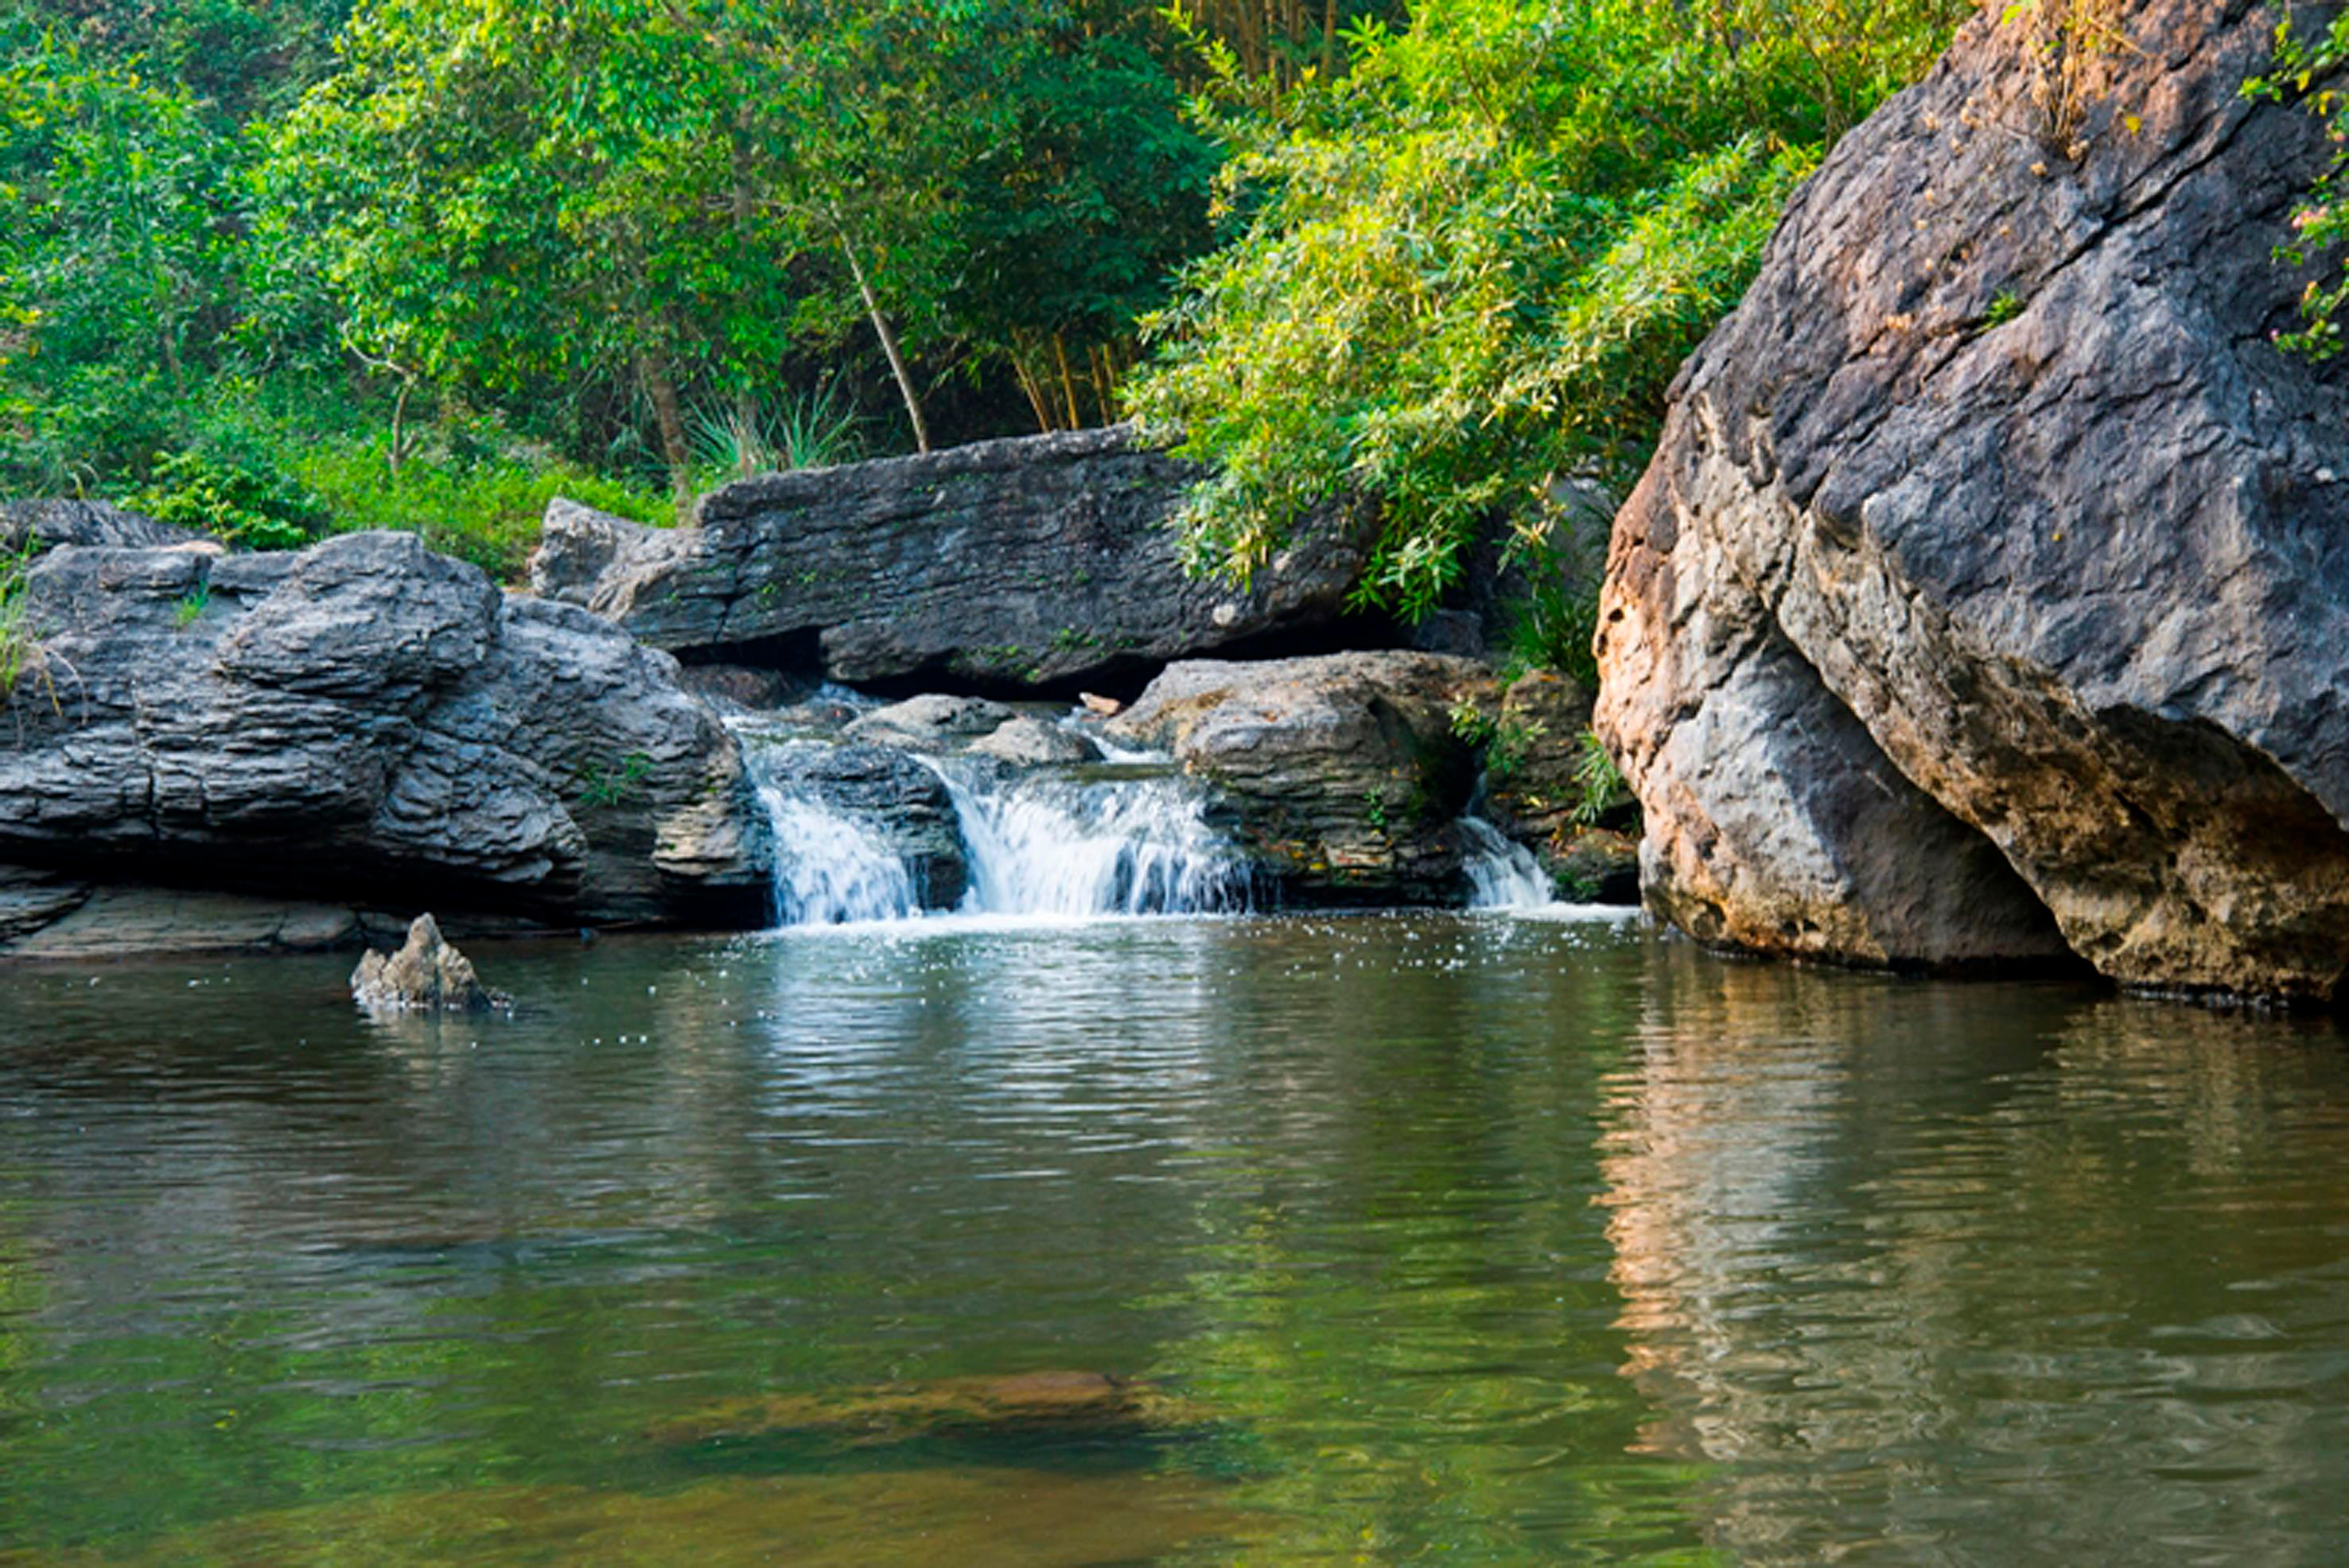 Du lịch sinh thái ở thác nước đẹp Hang Dơi, xã Quỳnh Tam. Ảnh: P.V